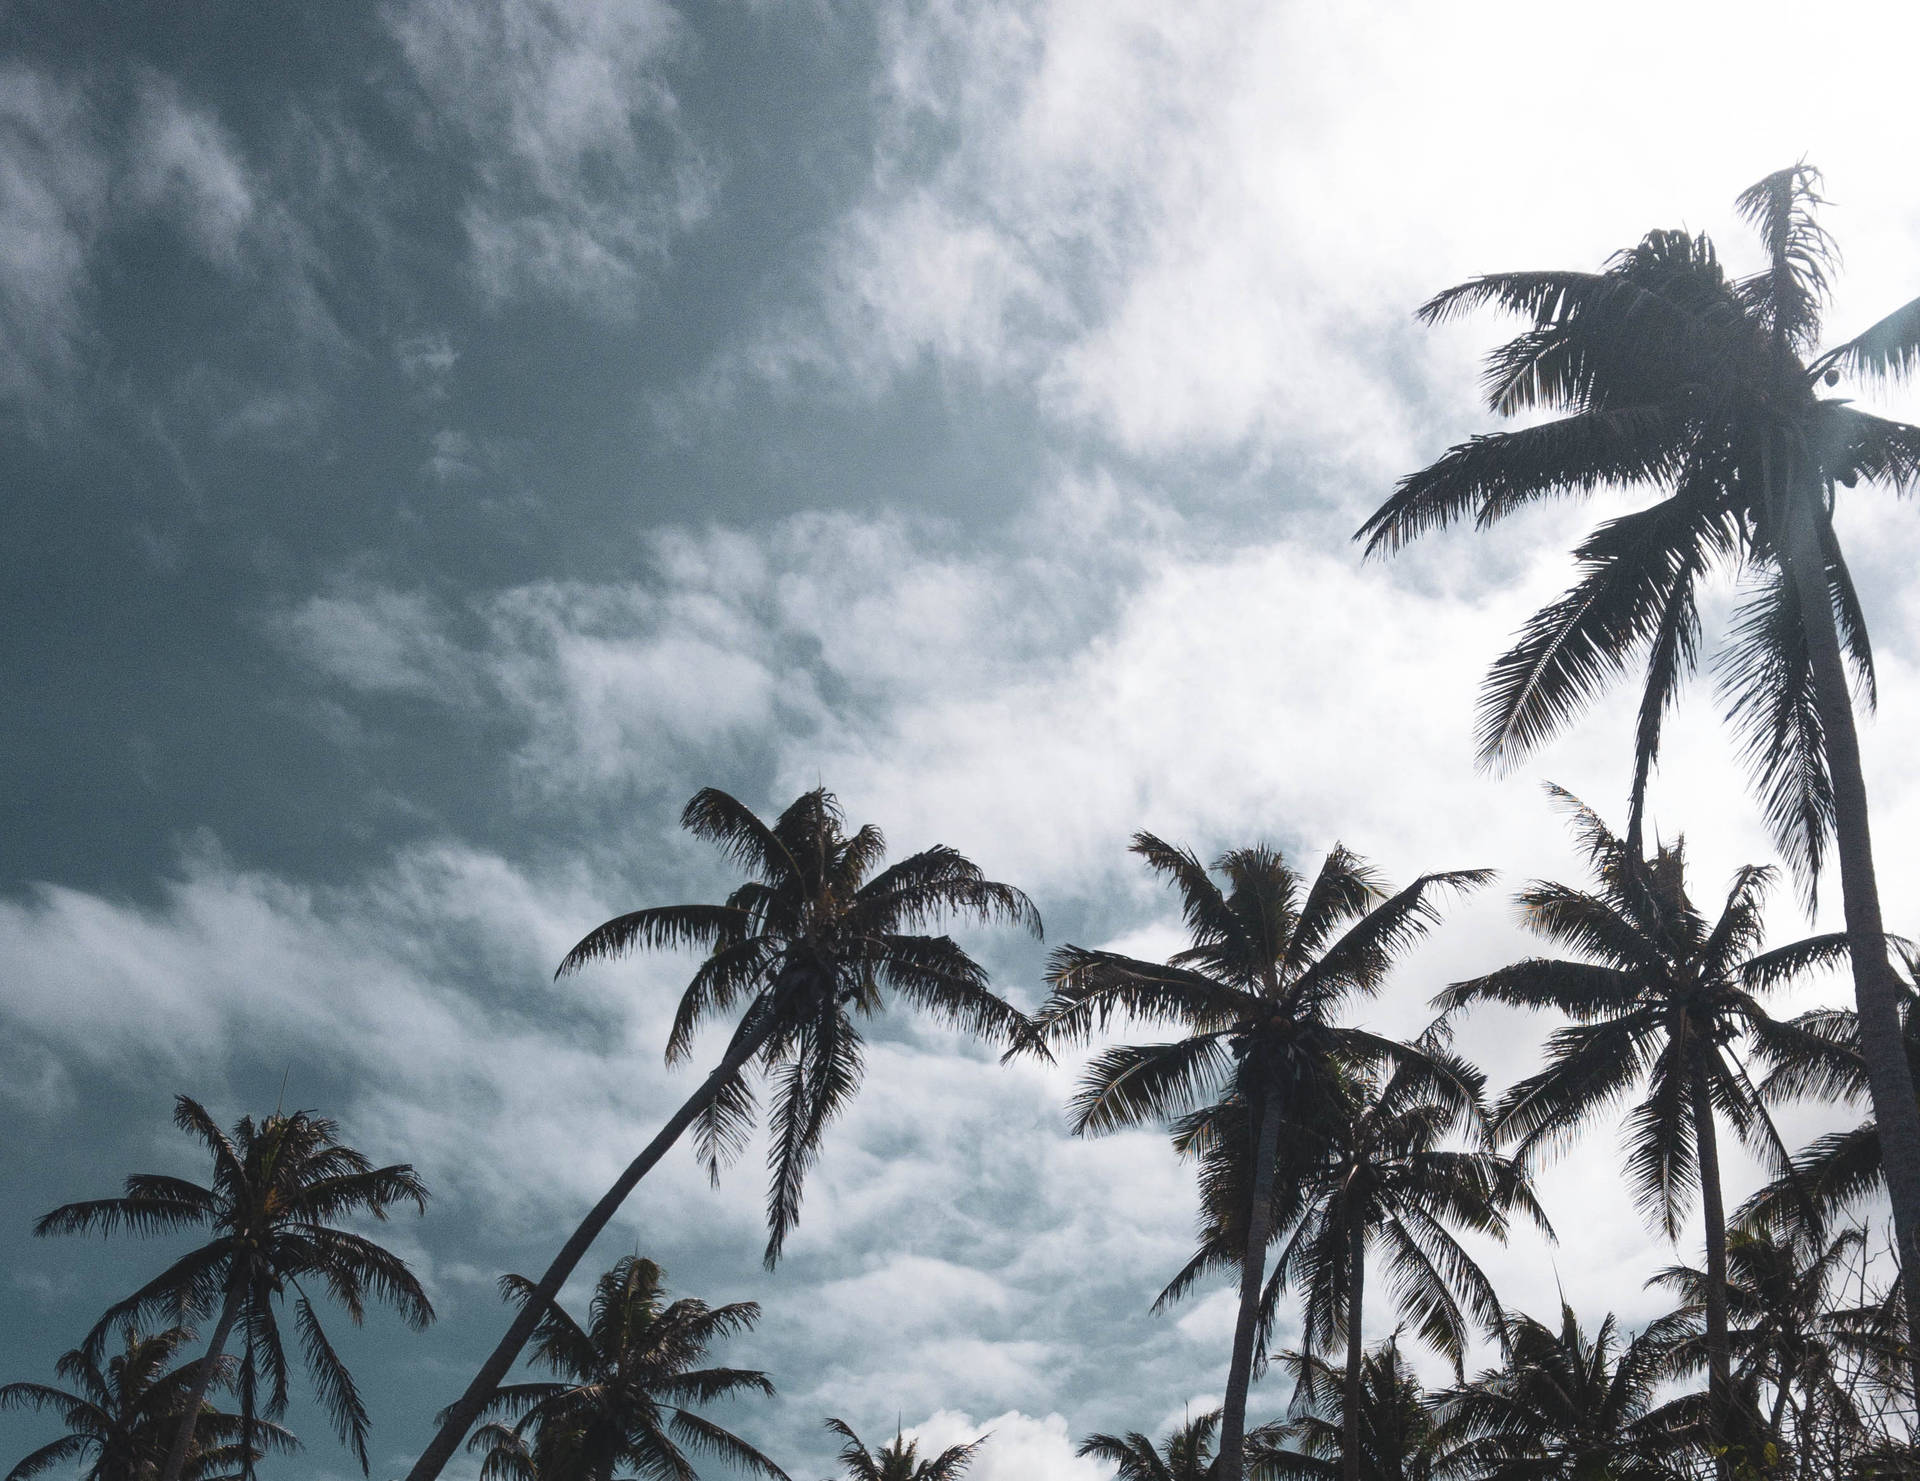 Vanuatu Palm Trees